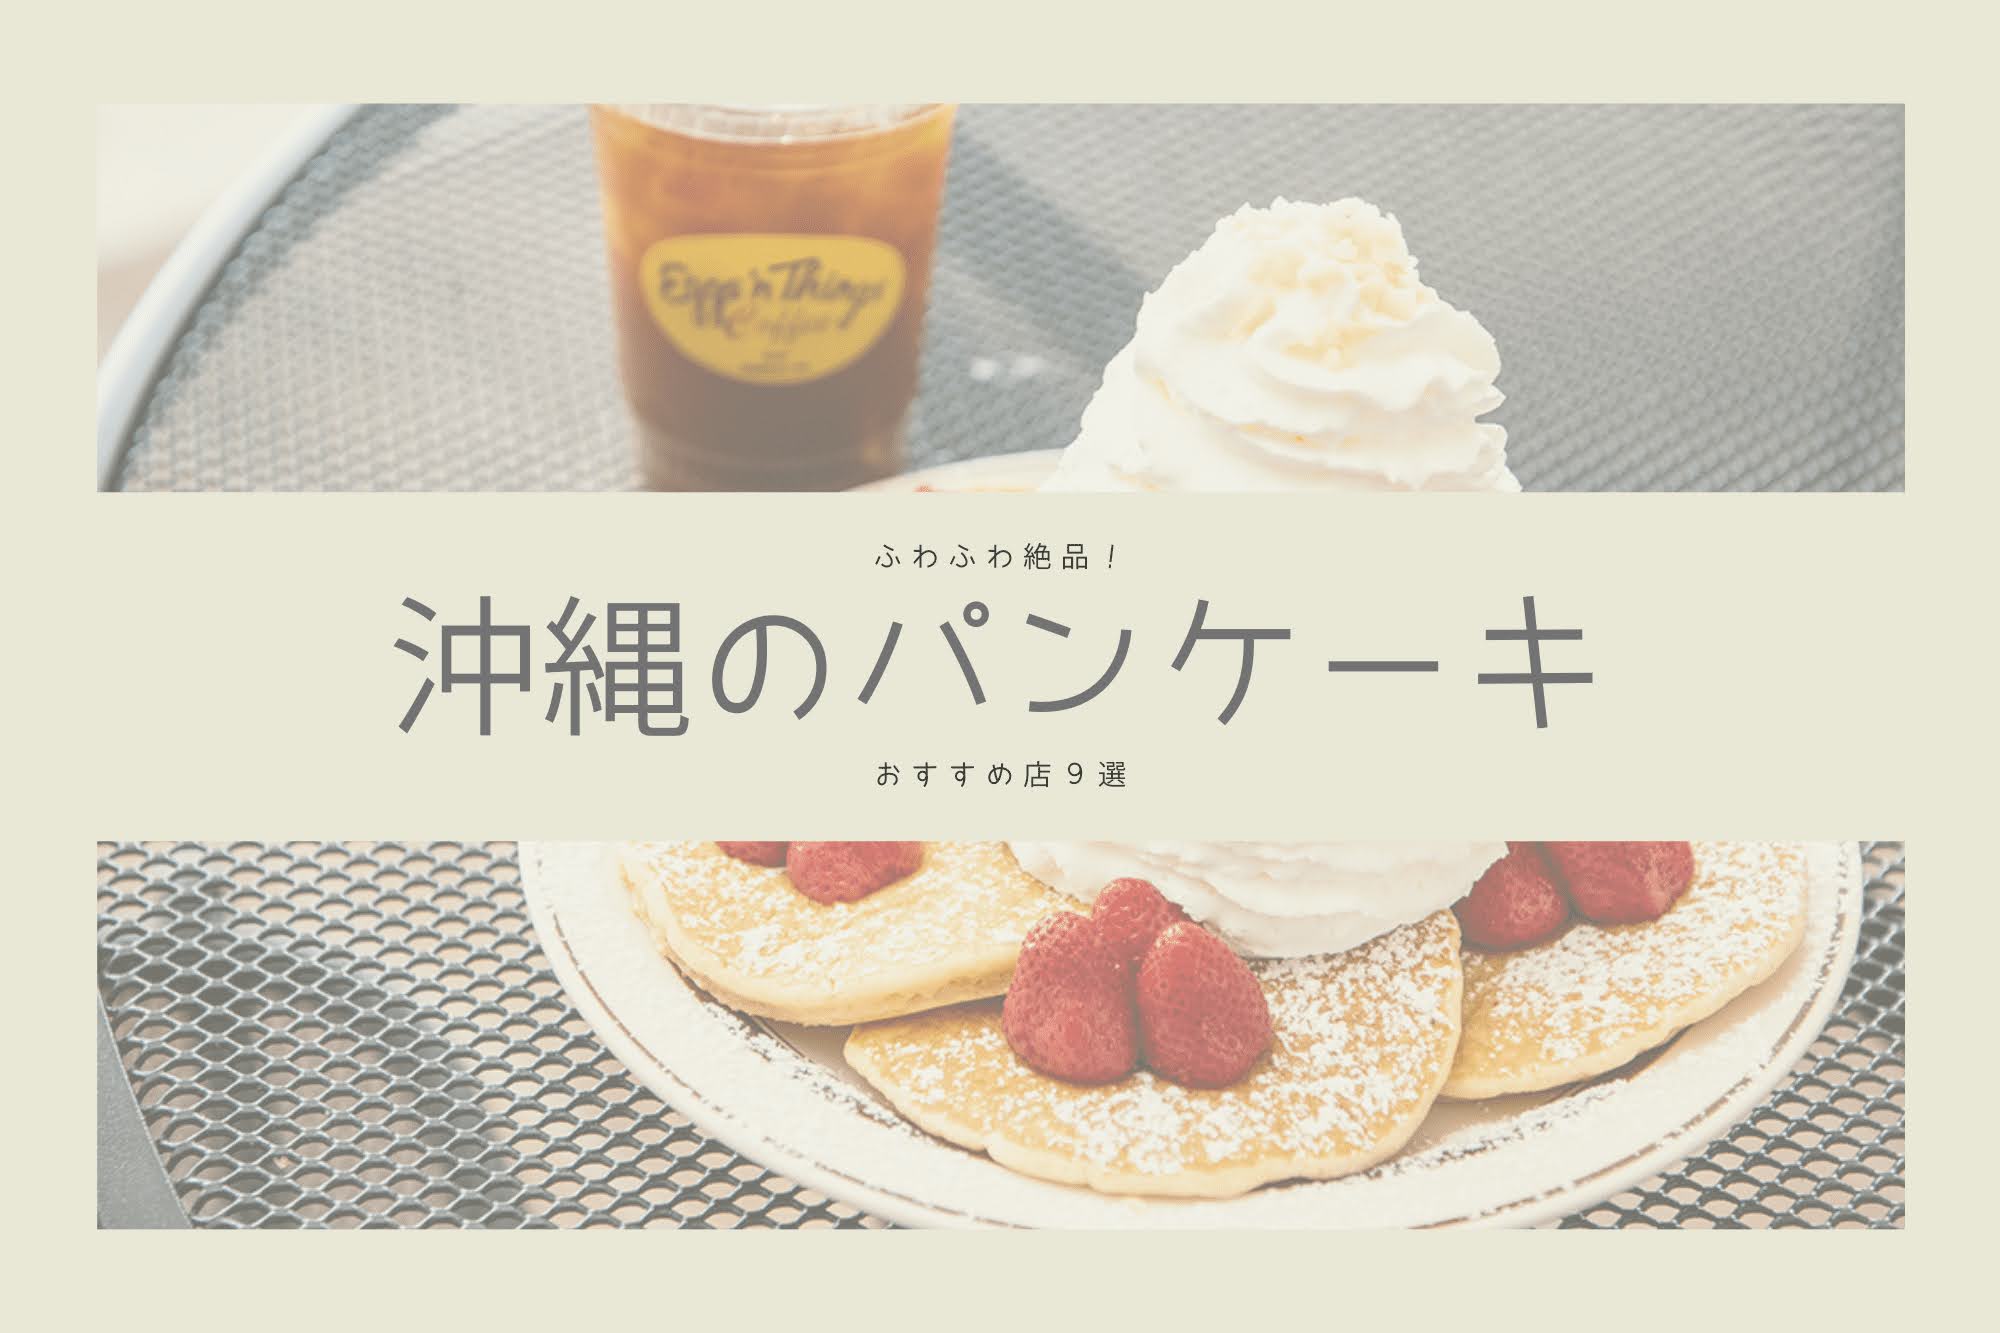 ふわふわ絶品 沖縄のパンケーキ のお店9選 沖縄の観光情報はfeel Okinawa